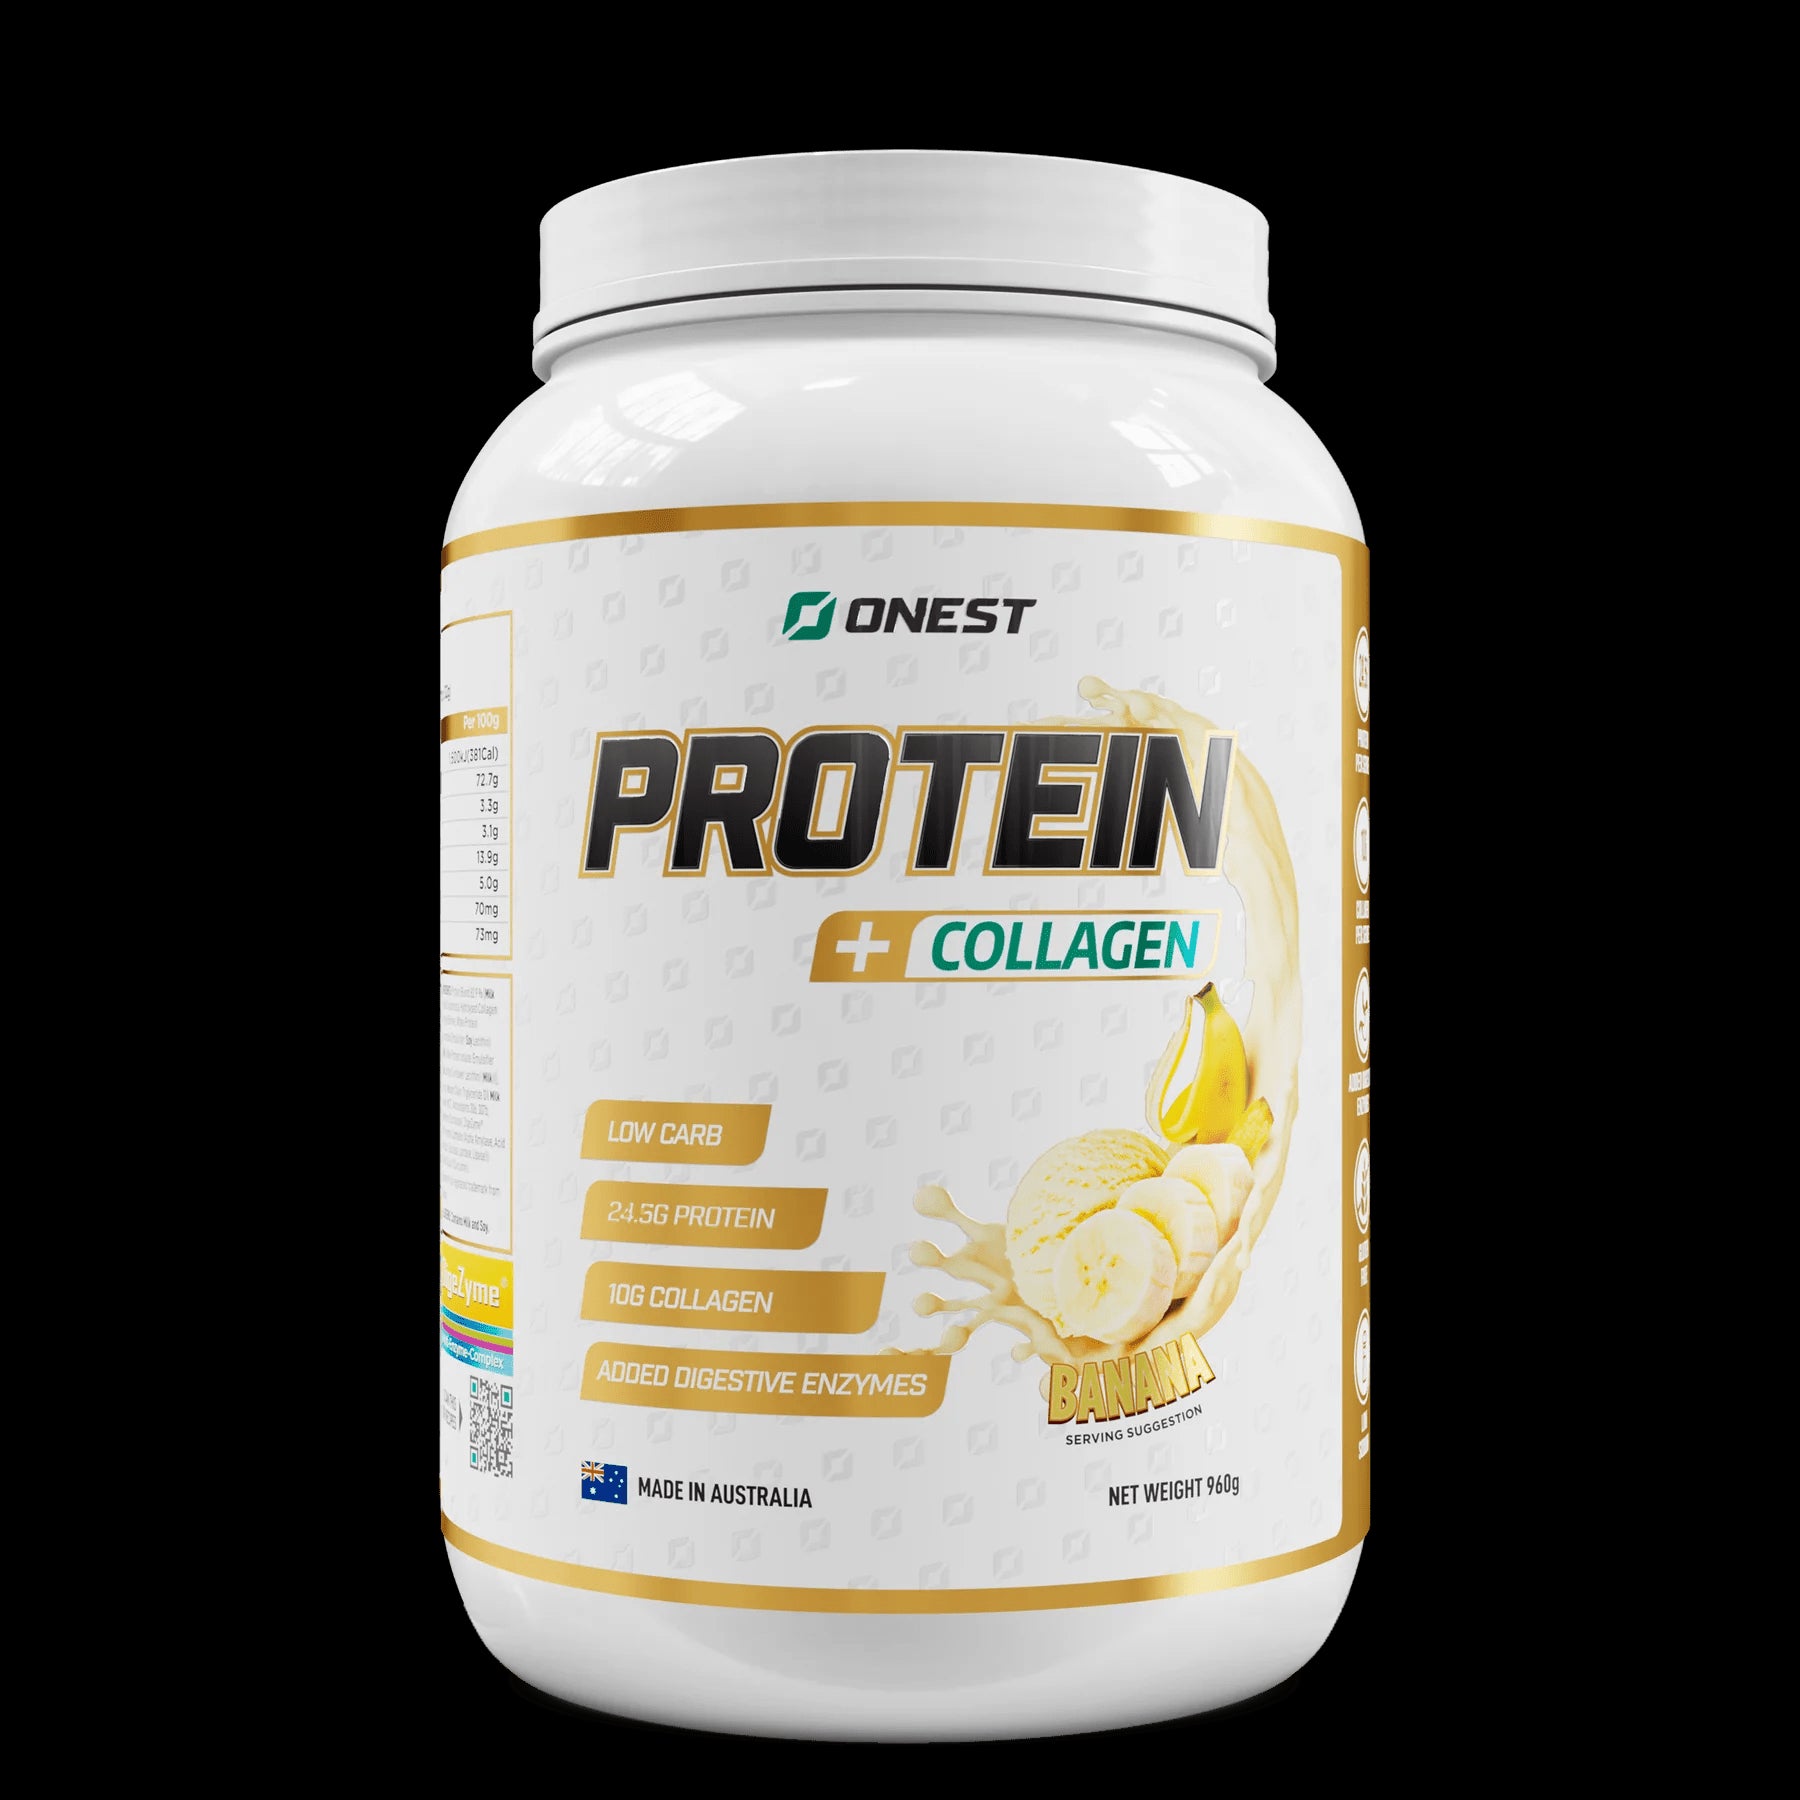 ONEST Whey Protein + Collagen | Banana